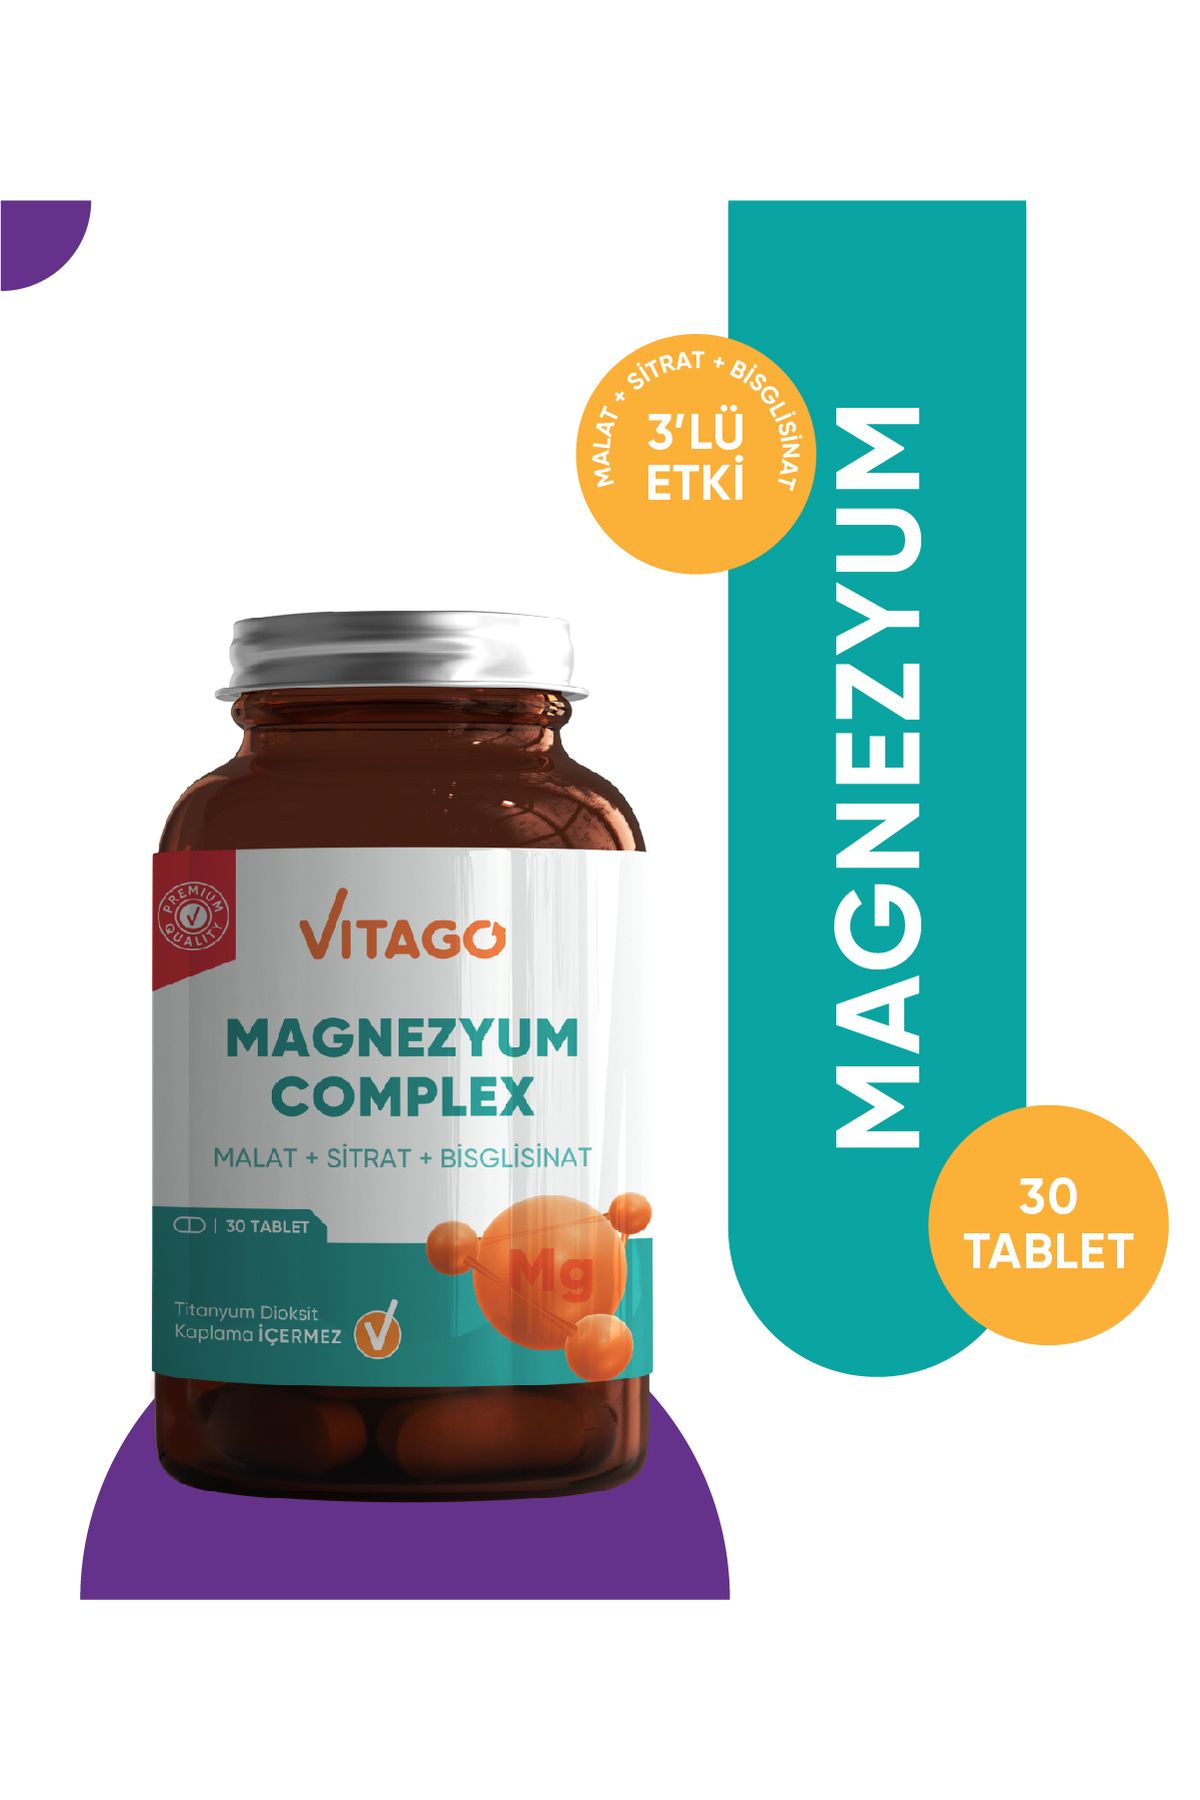 Vitago Premium Magnezyum Complex İçeren Tablet Takviye Edici Gıda 30'lu